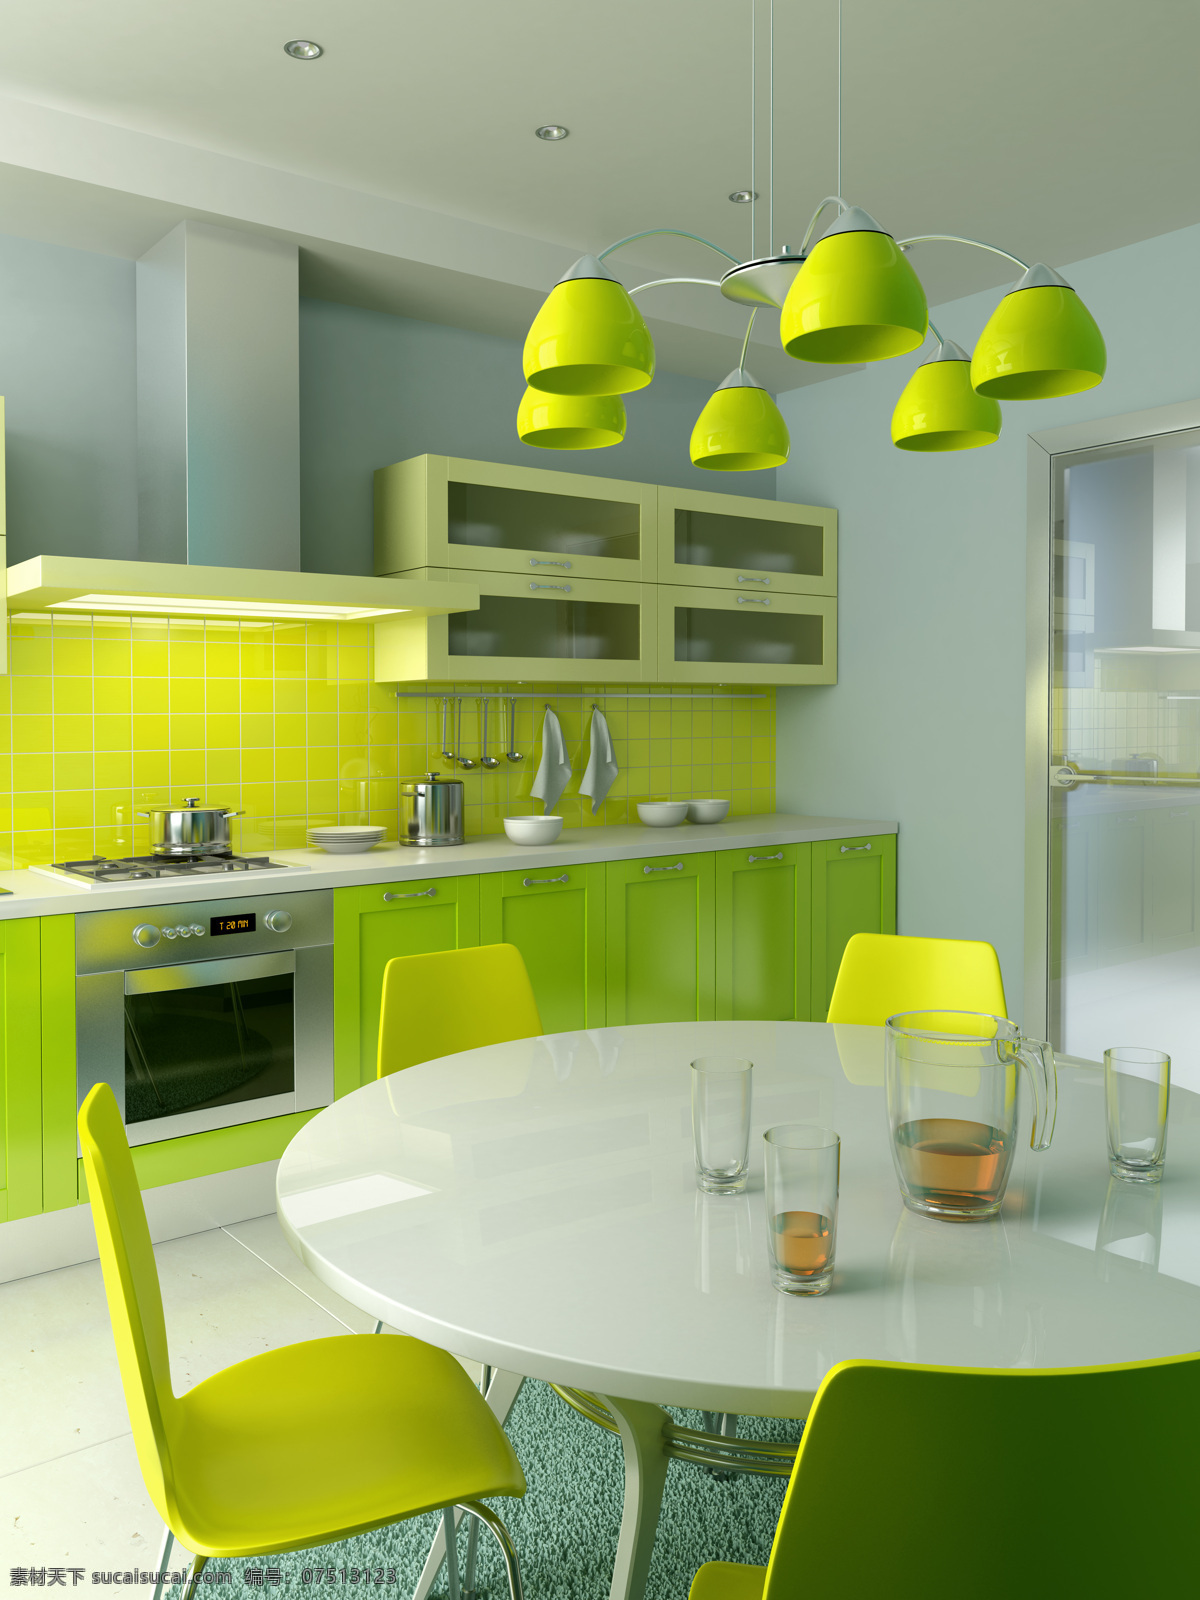 绿色 调子 厨房 厨房设计 室内设计 效果图 家居装饰素材